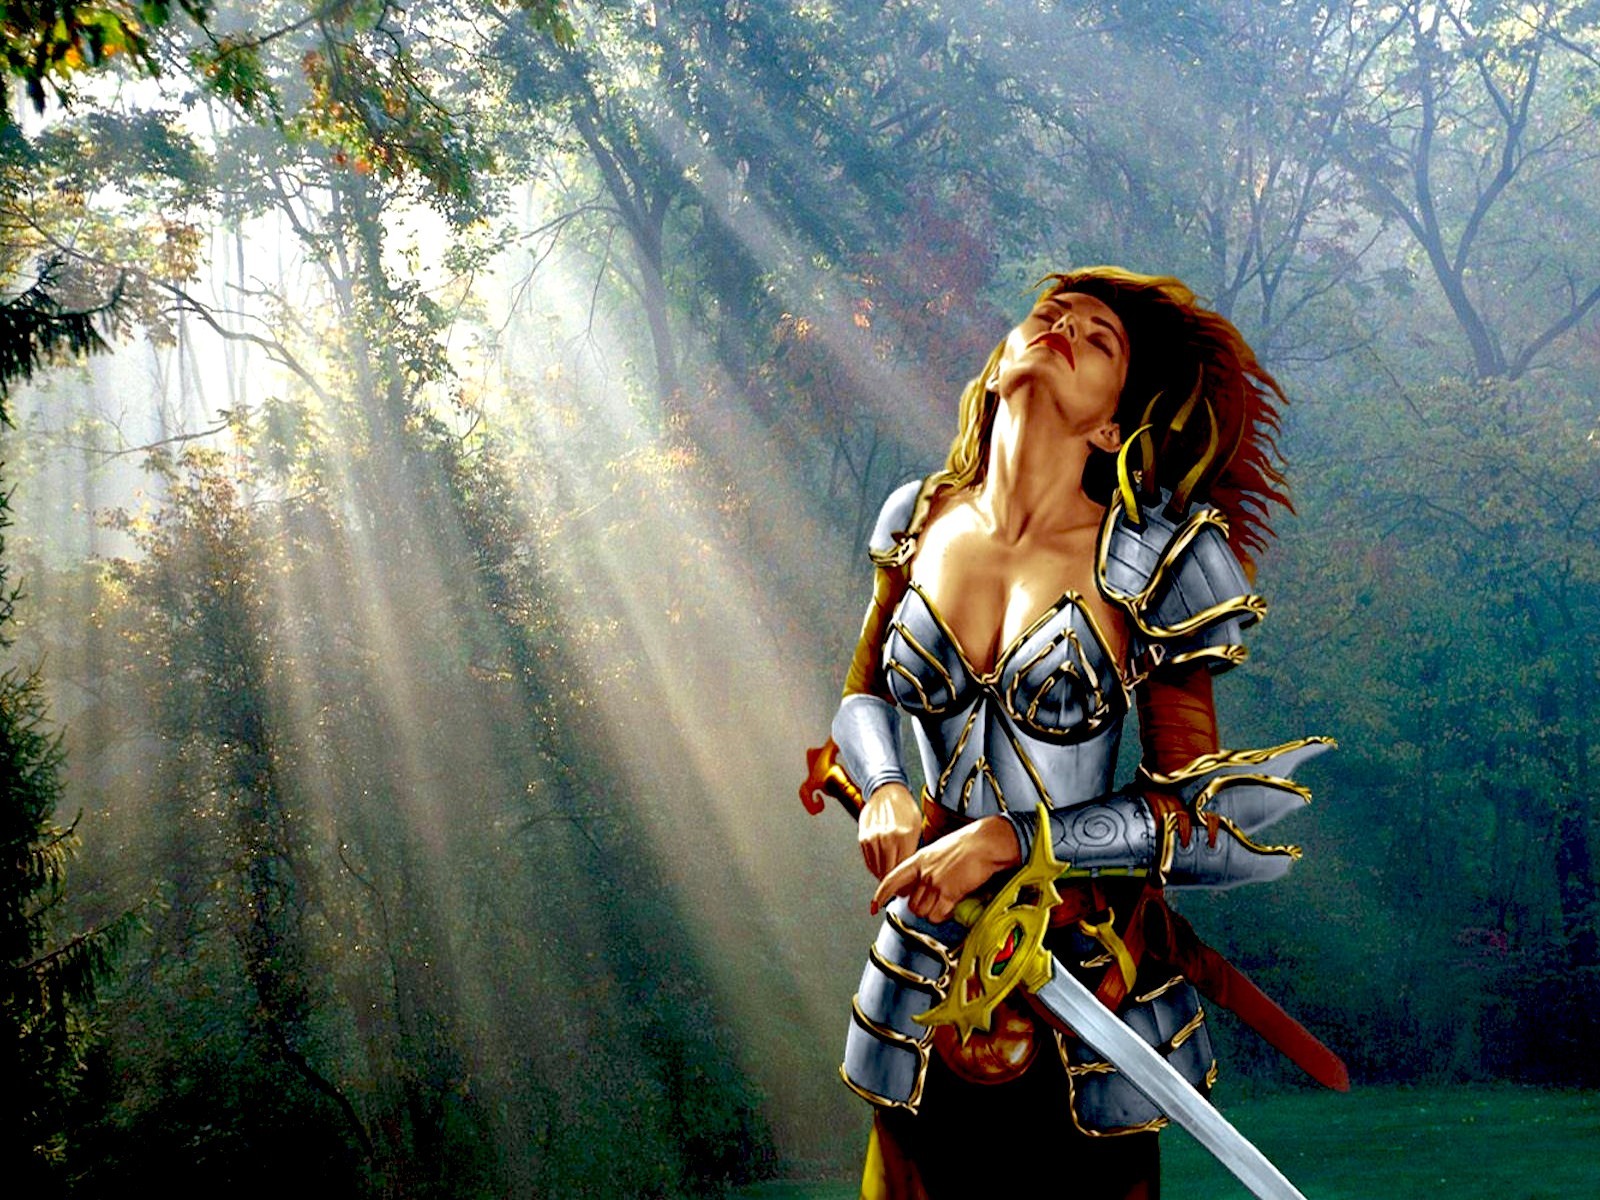 3d обои Девушка в доспехах и вооружённая мечом подставляет себя солнечным лучам, пробивающимся сквозь листву леса  милитари # 53438